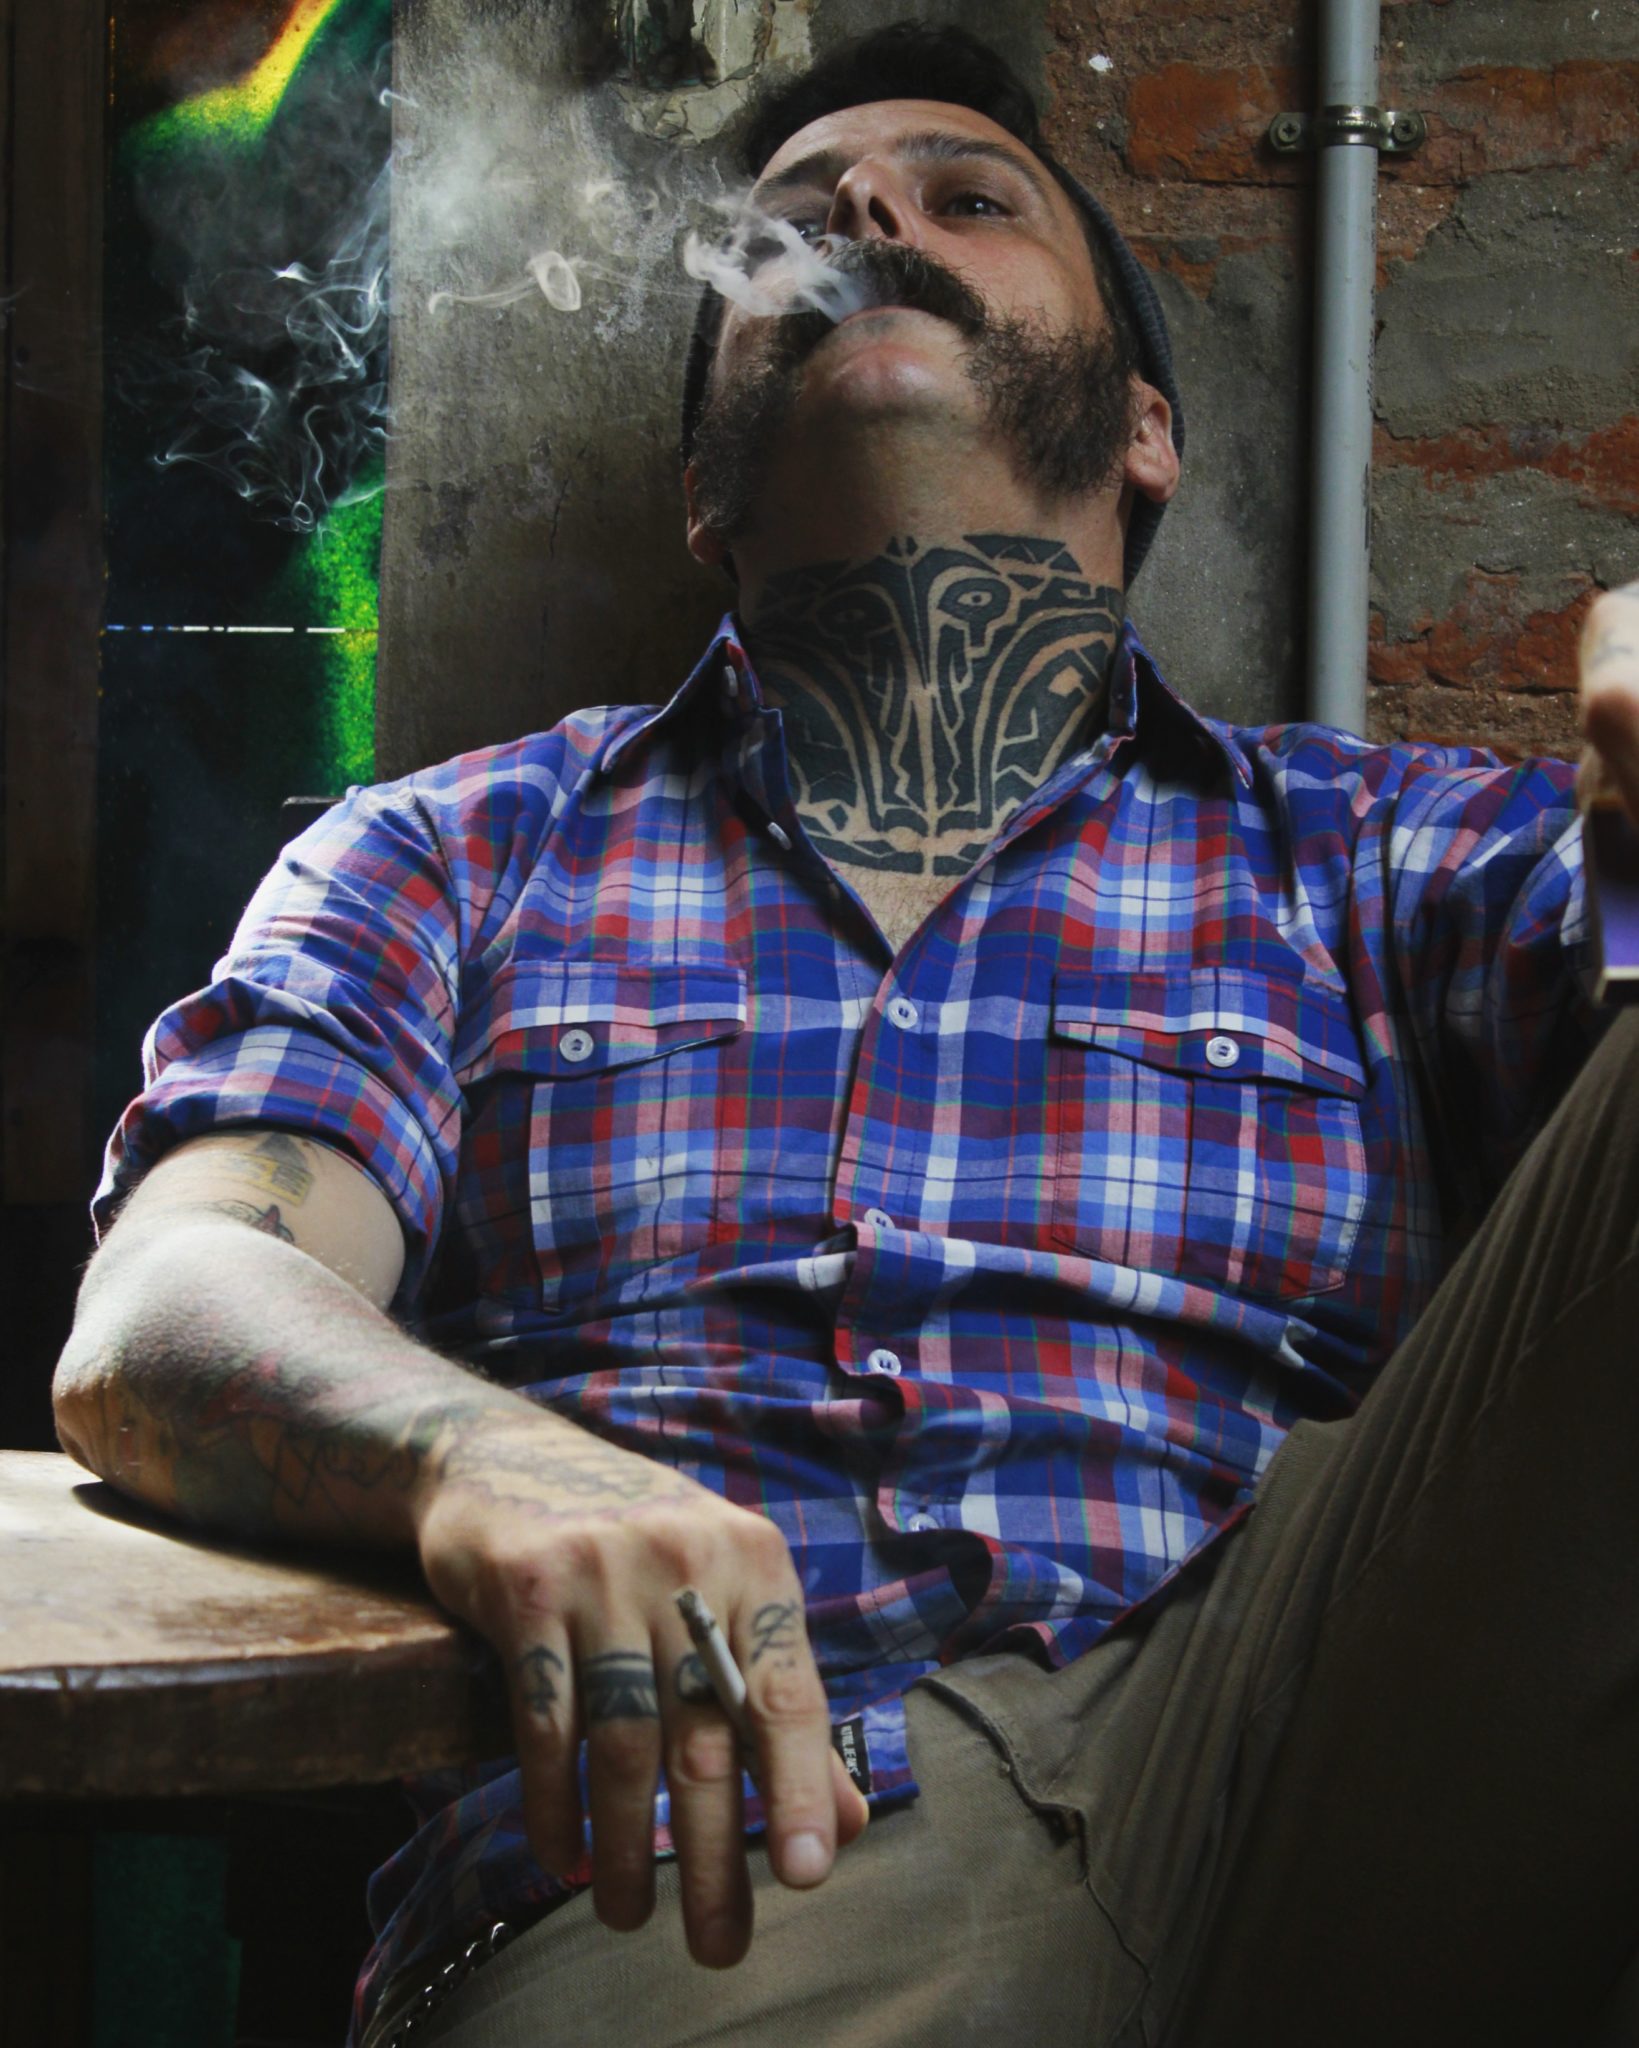 Gość w koszuli, palący papierosa i siedzący na fotelu